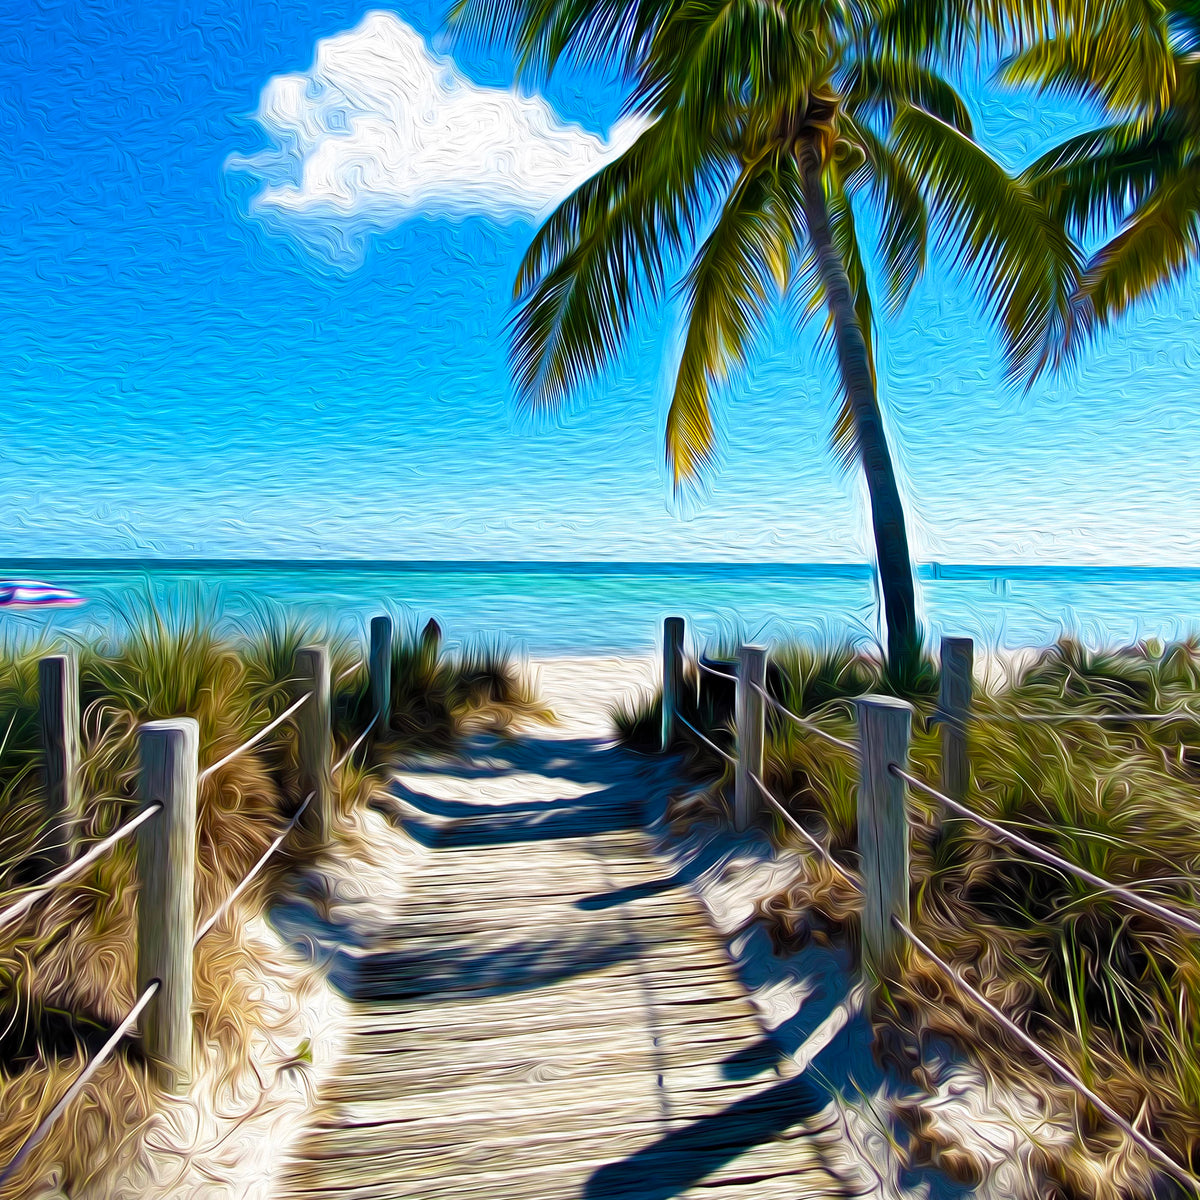 Florida & The Keys